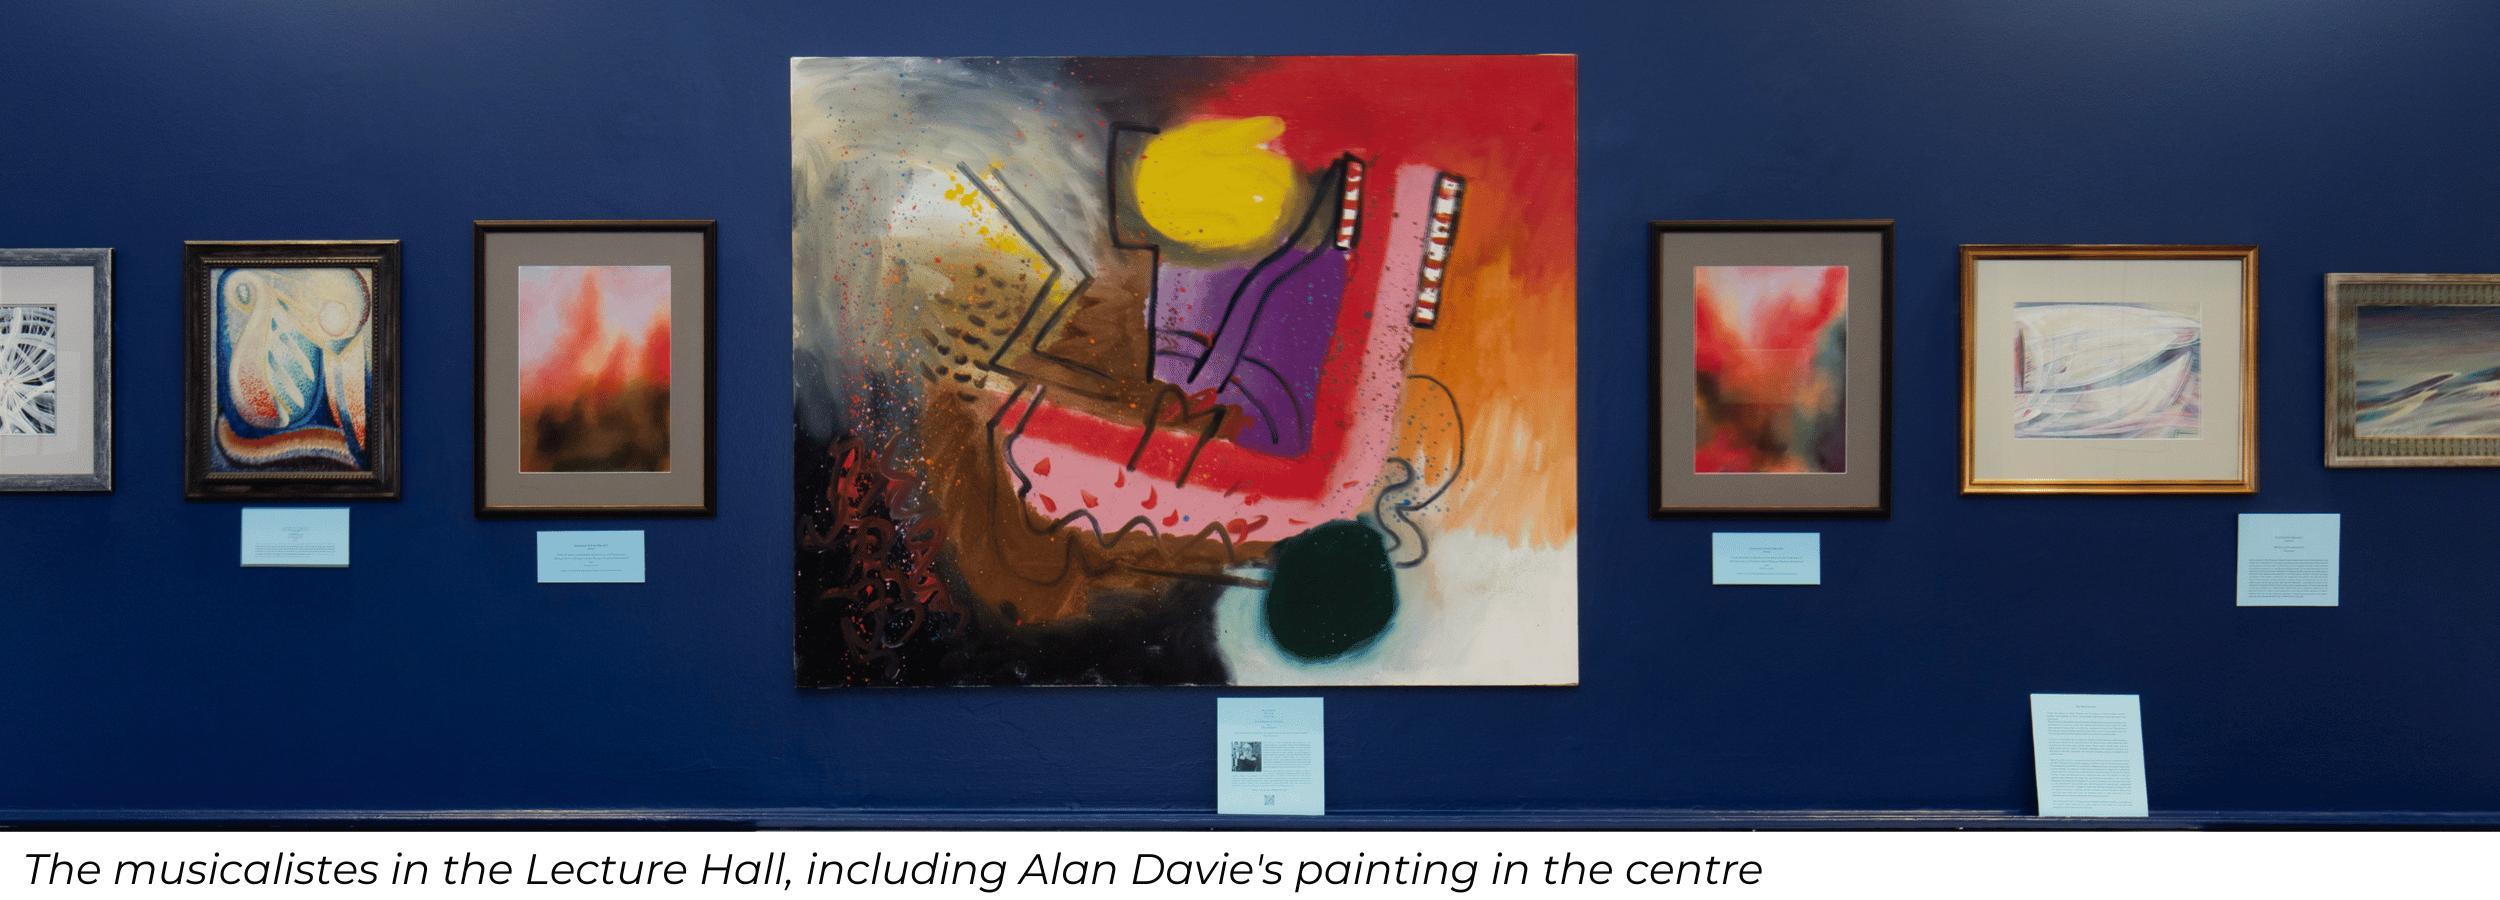 Alan Davie painting